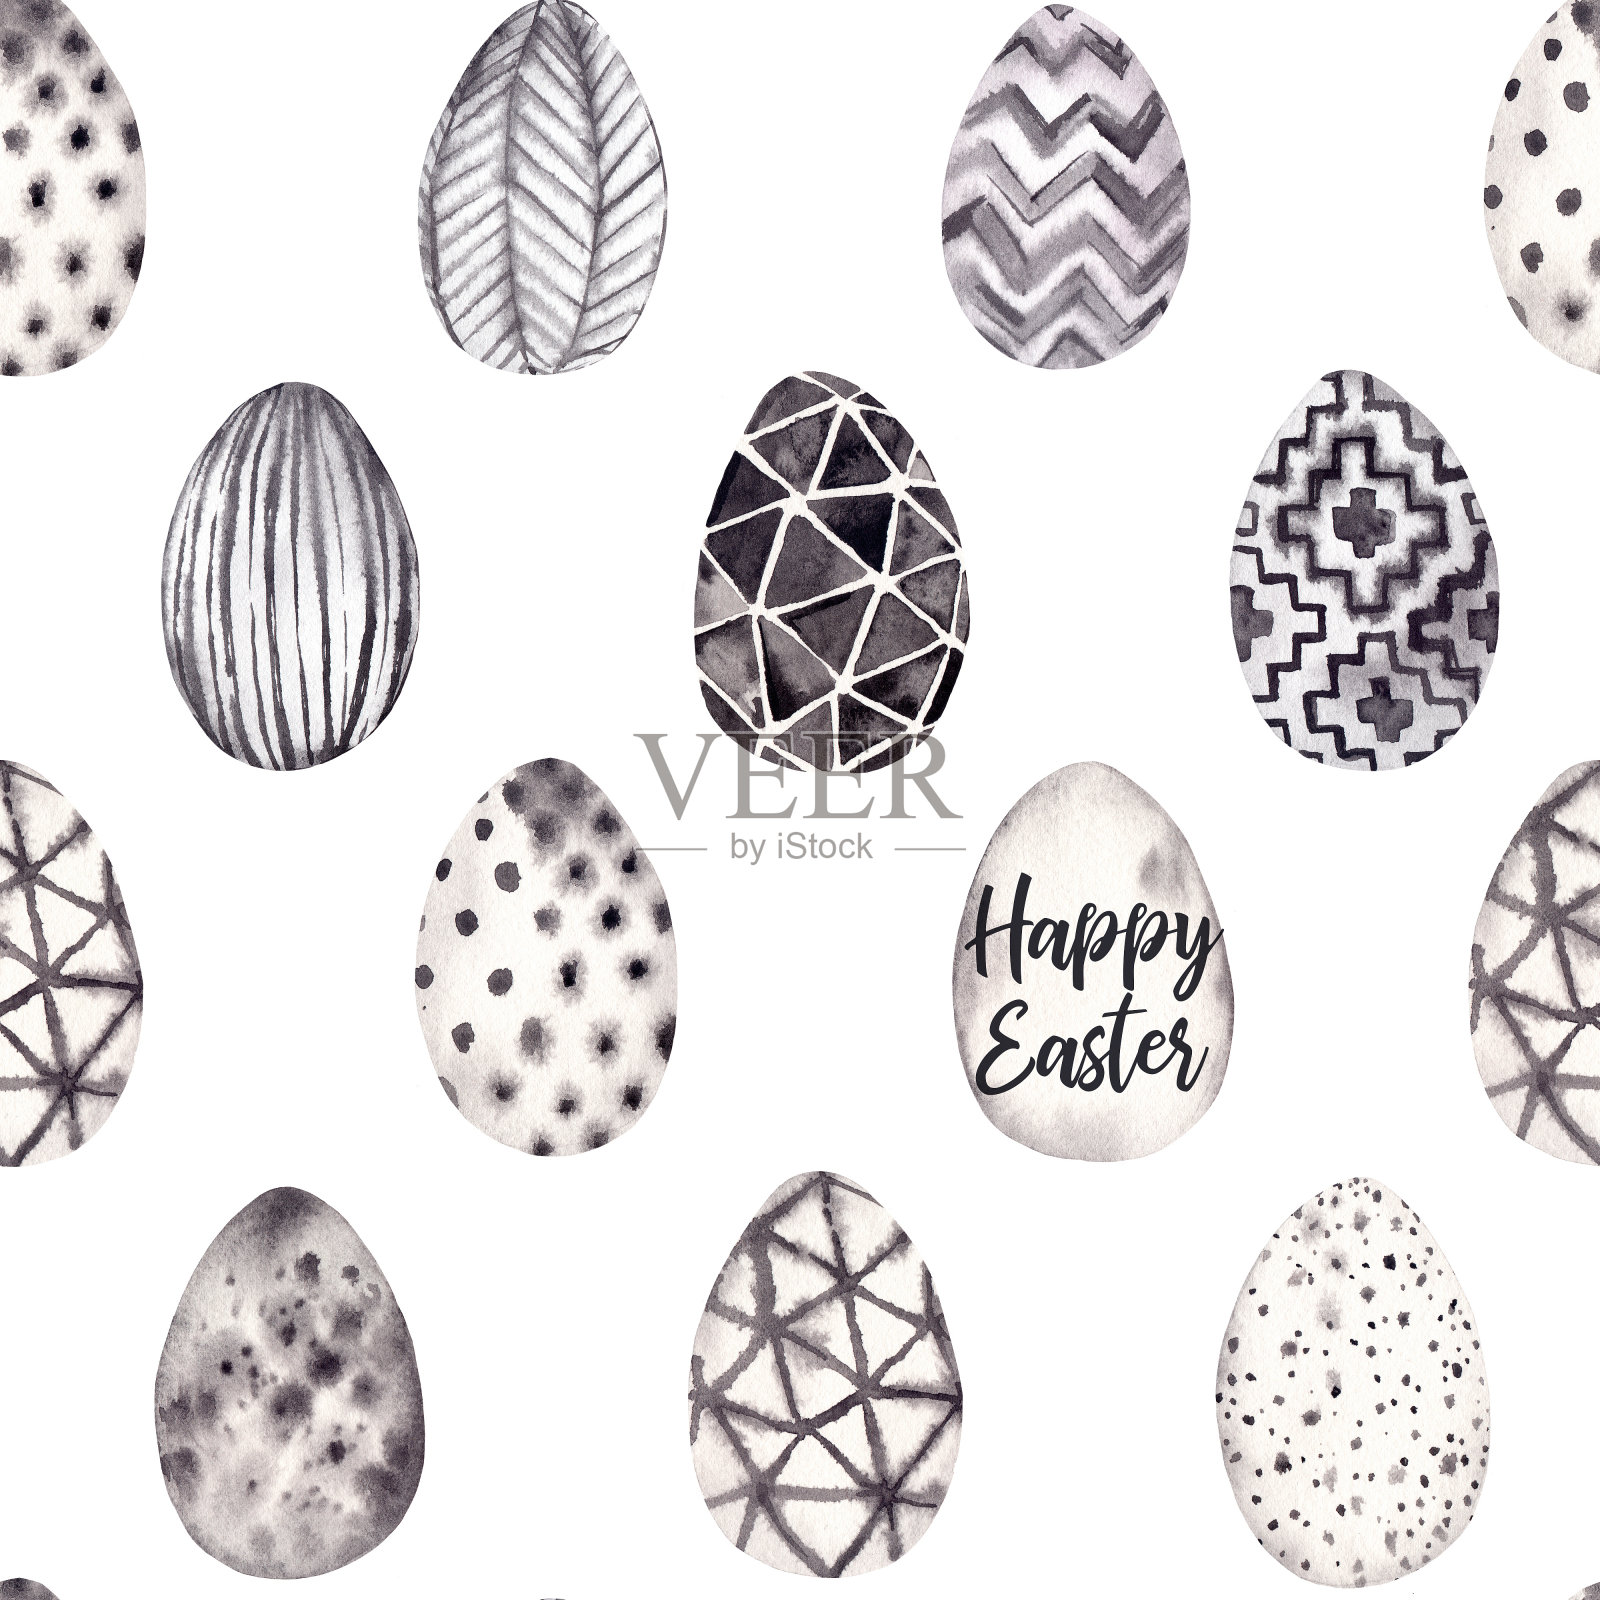 水彩无缝模式。黑色和白色的背景和时髦的鸡蛋。复活节快乐!草图。适合制作请柬、贺卡、海报、印刷品、包装等插画图片素材